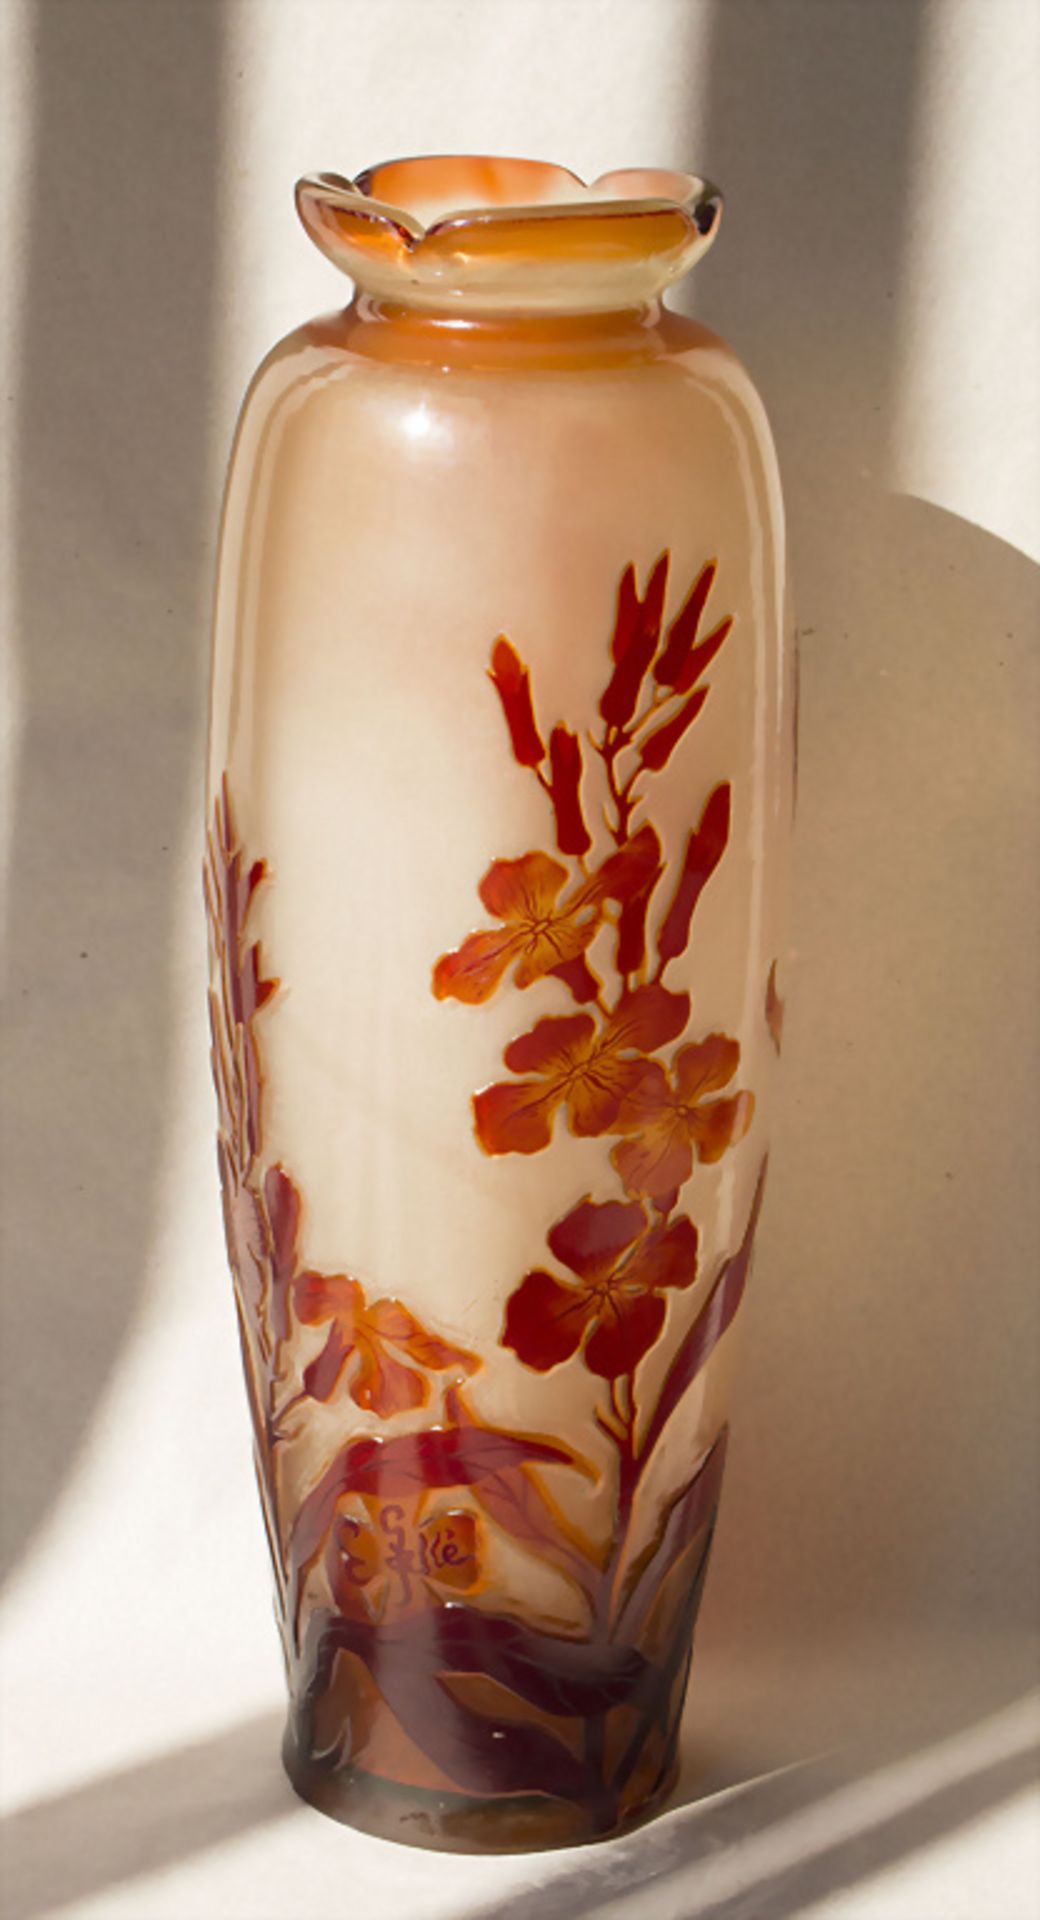 Jugendstil Vase / An Art Nouveau vase, Emile Gallé, Ecole de Nancy, 1898-1904 - Bild 3 aus 6